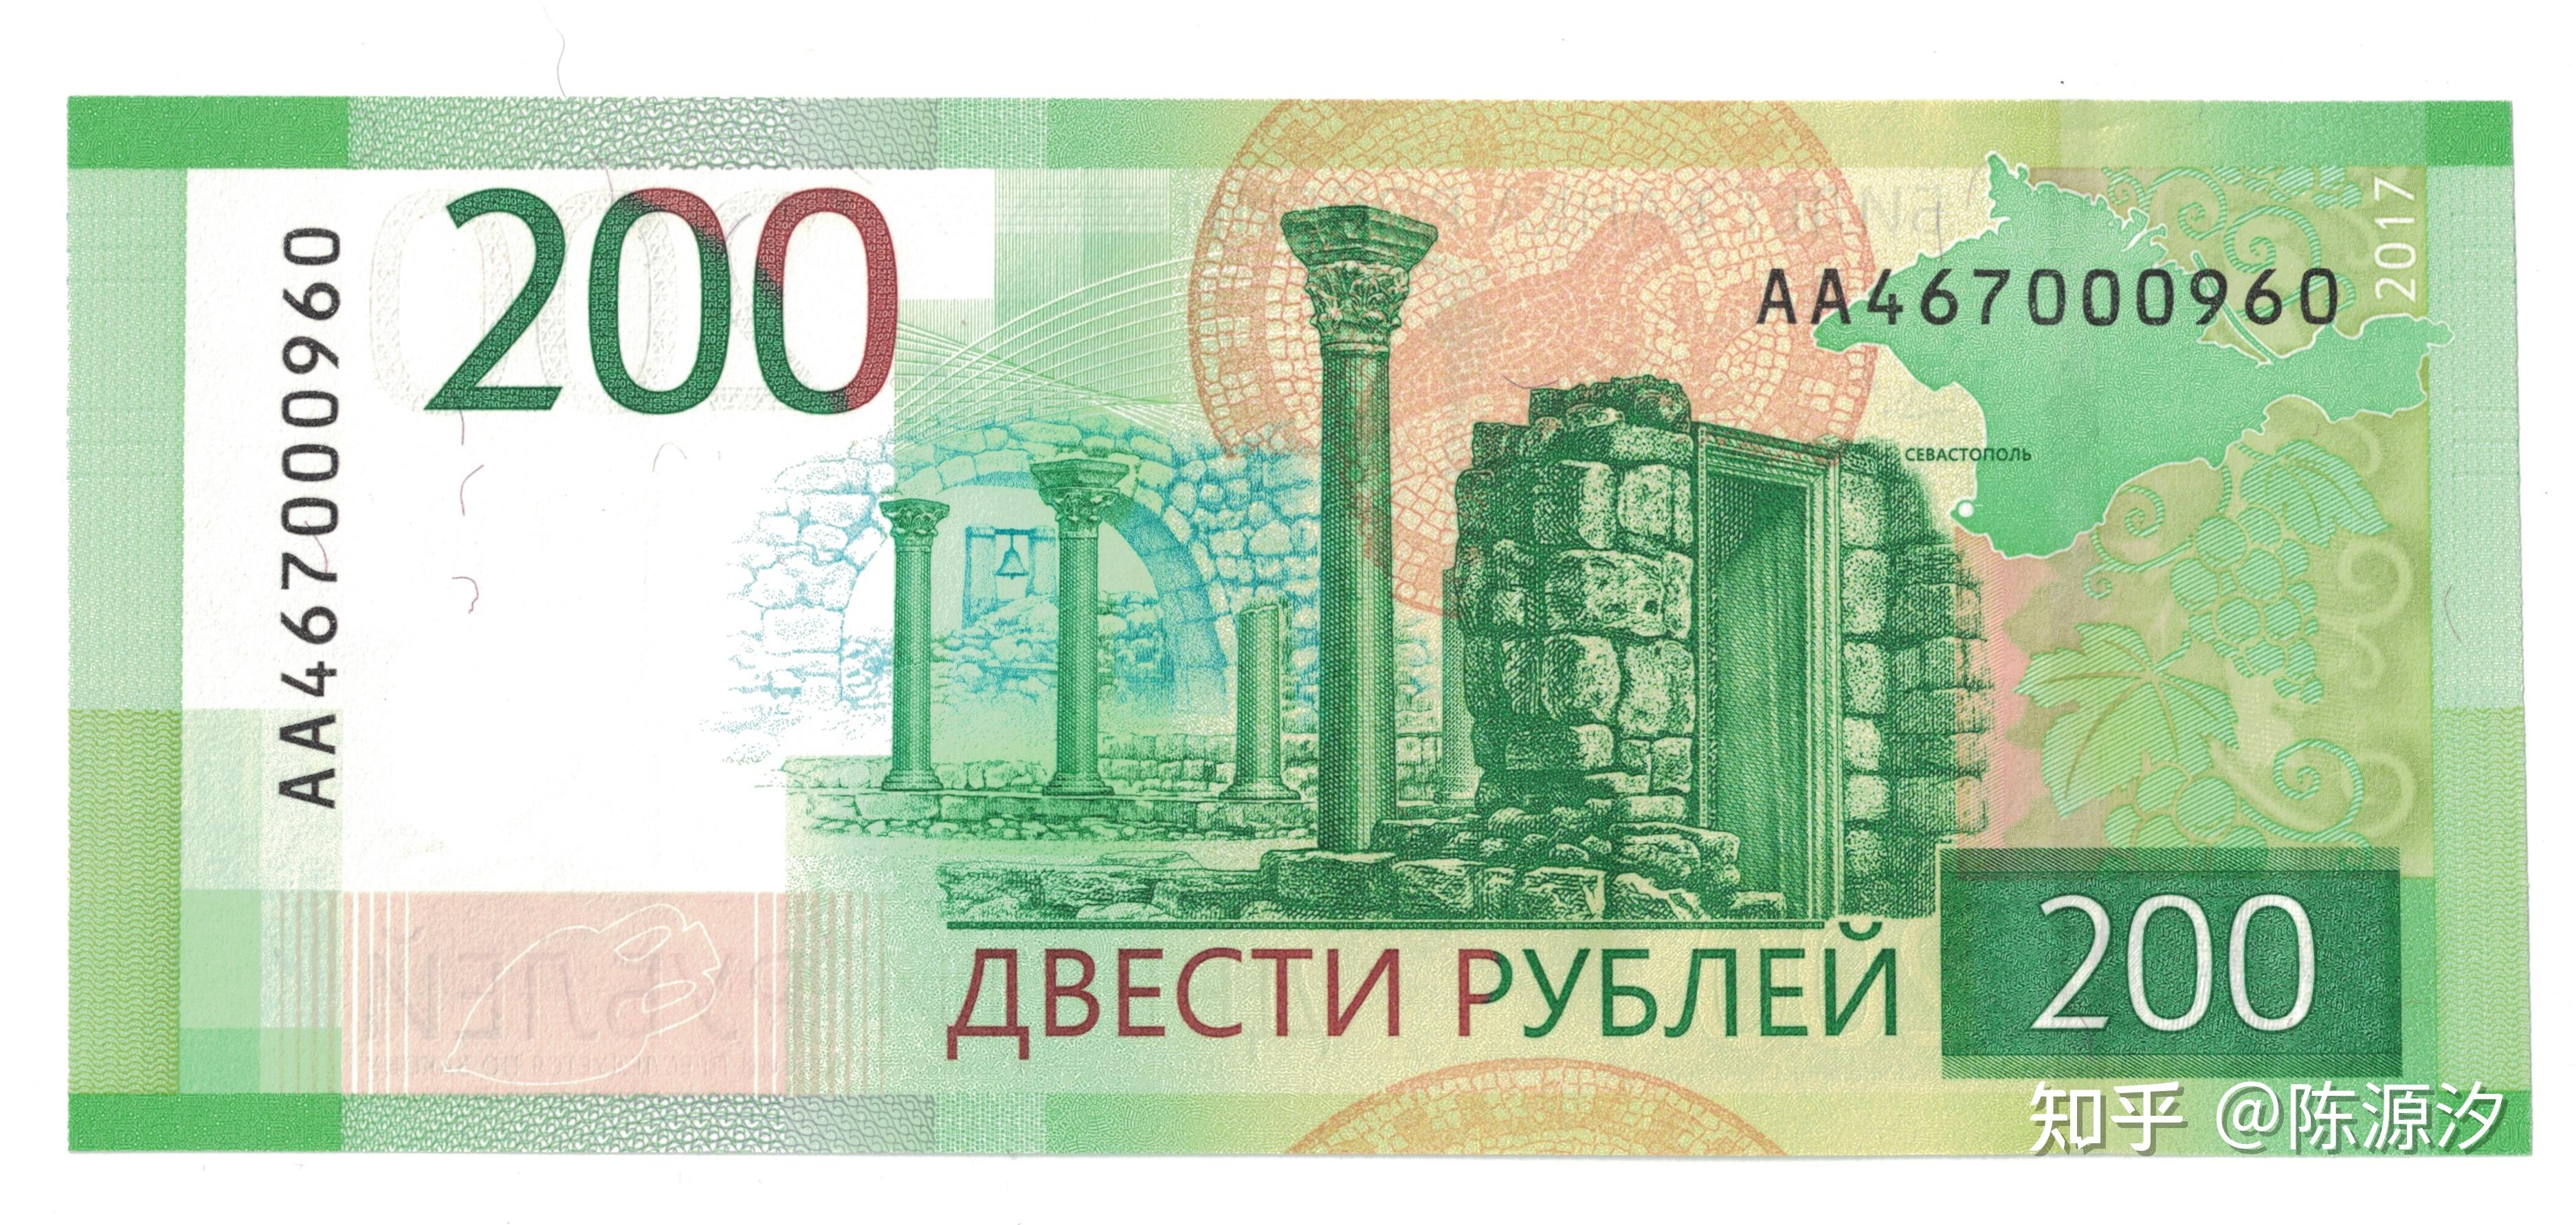 俄罗斯10卢布2004年欧洲纸币实物图UNC-价格:15元-se92770391-外国钱币-零售-7788收藏__收藏热线